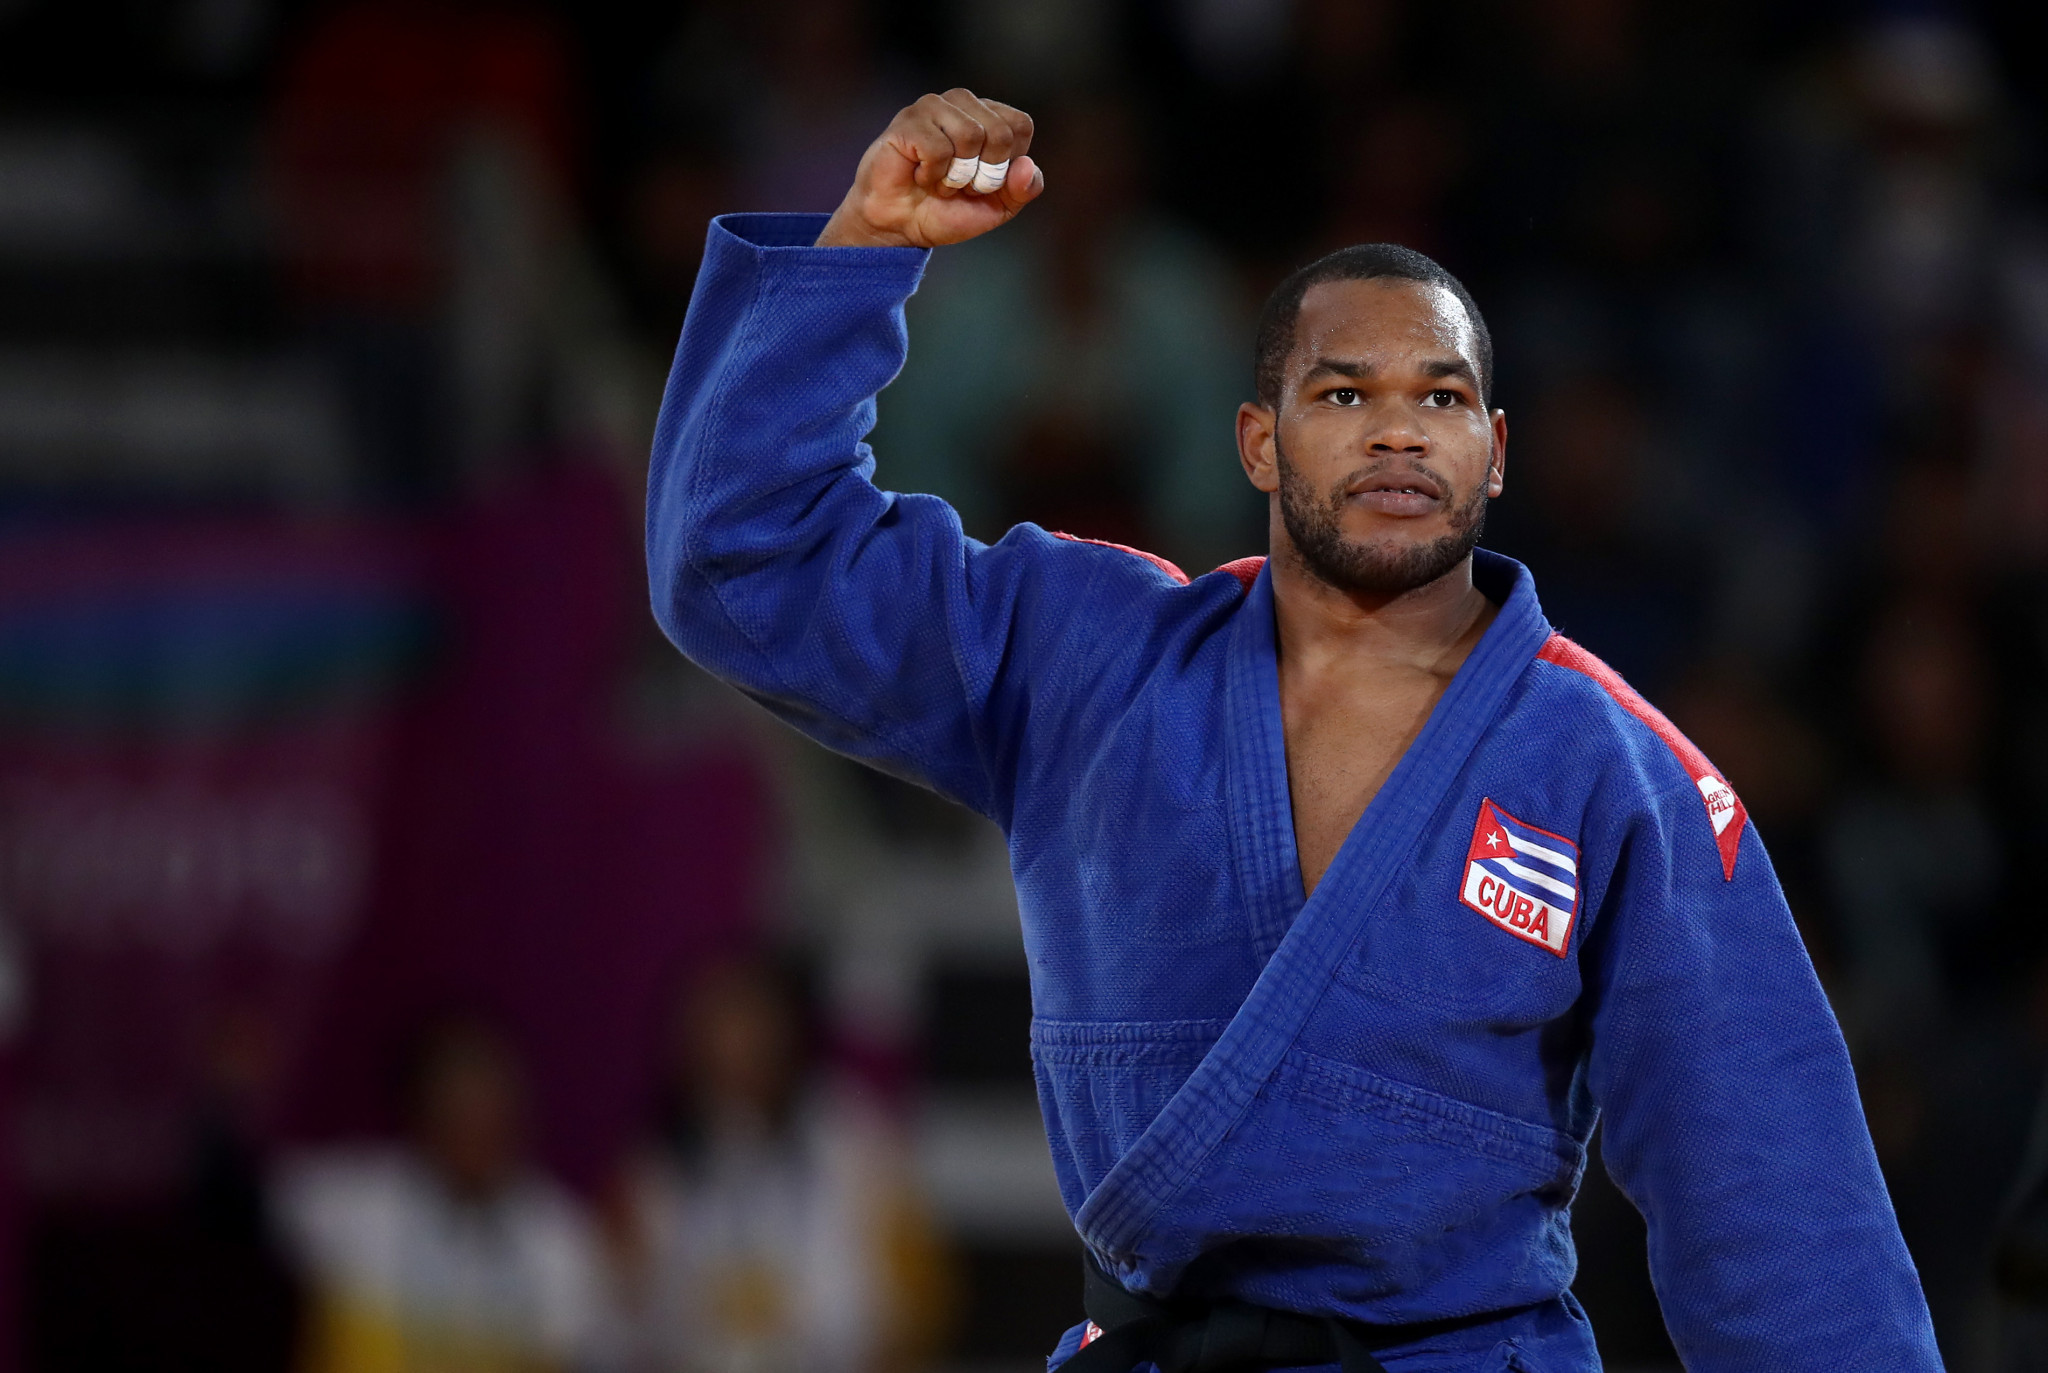 Granda reclaims title from Silva at Pan American-Oceania Judo Championships